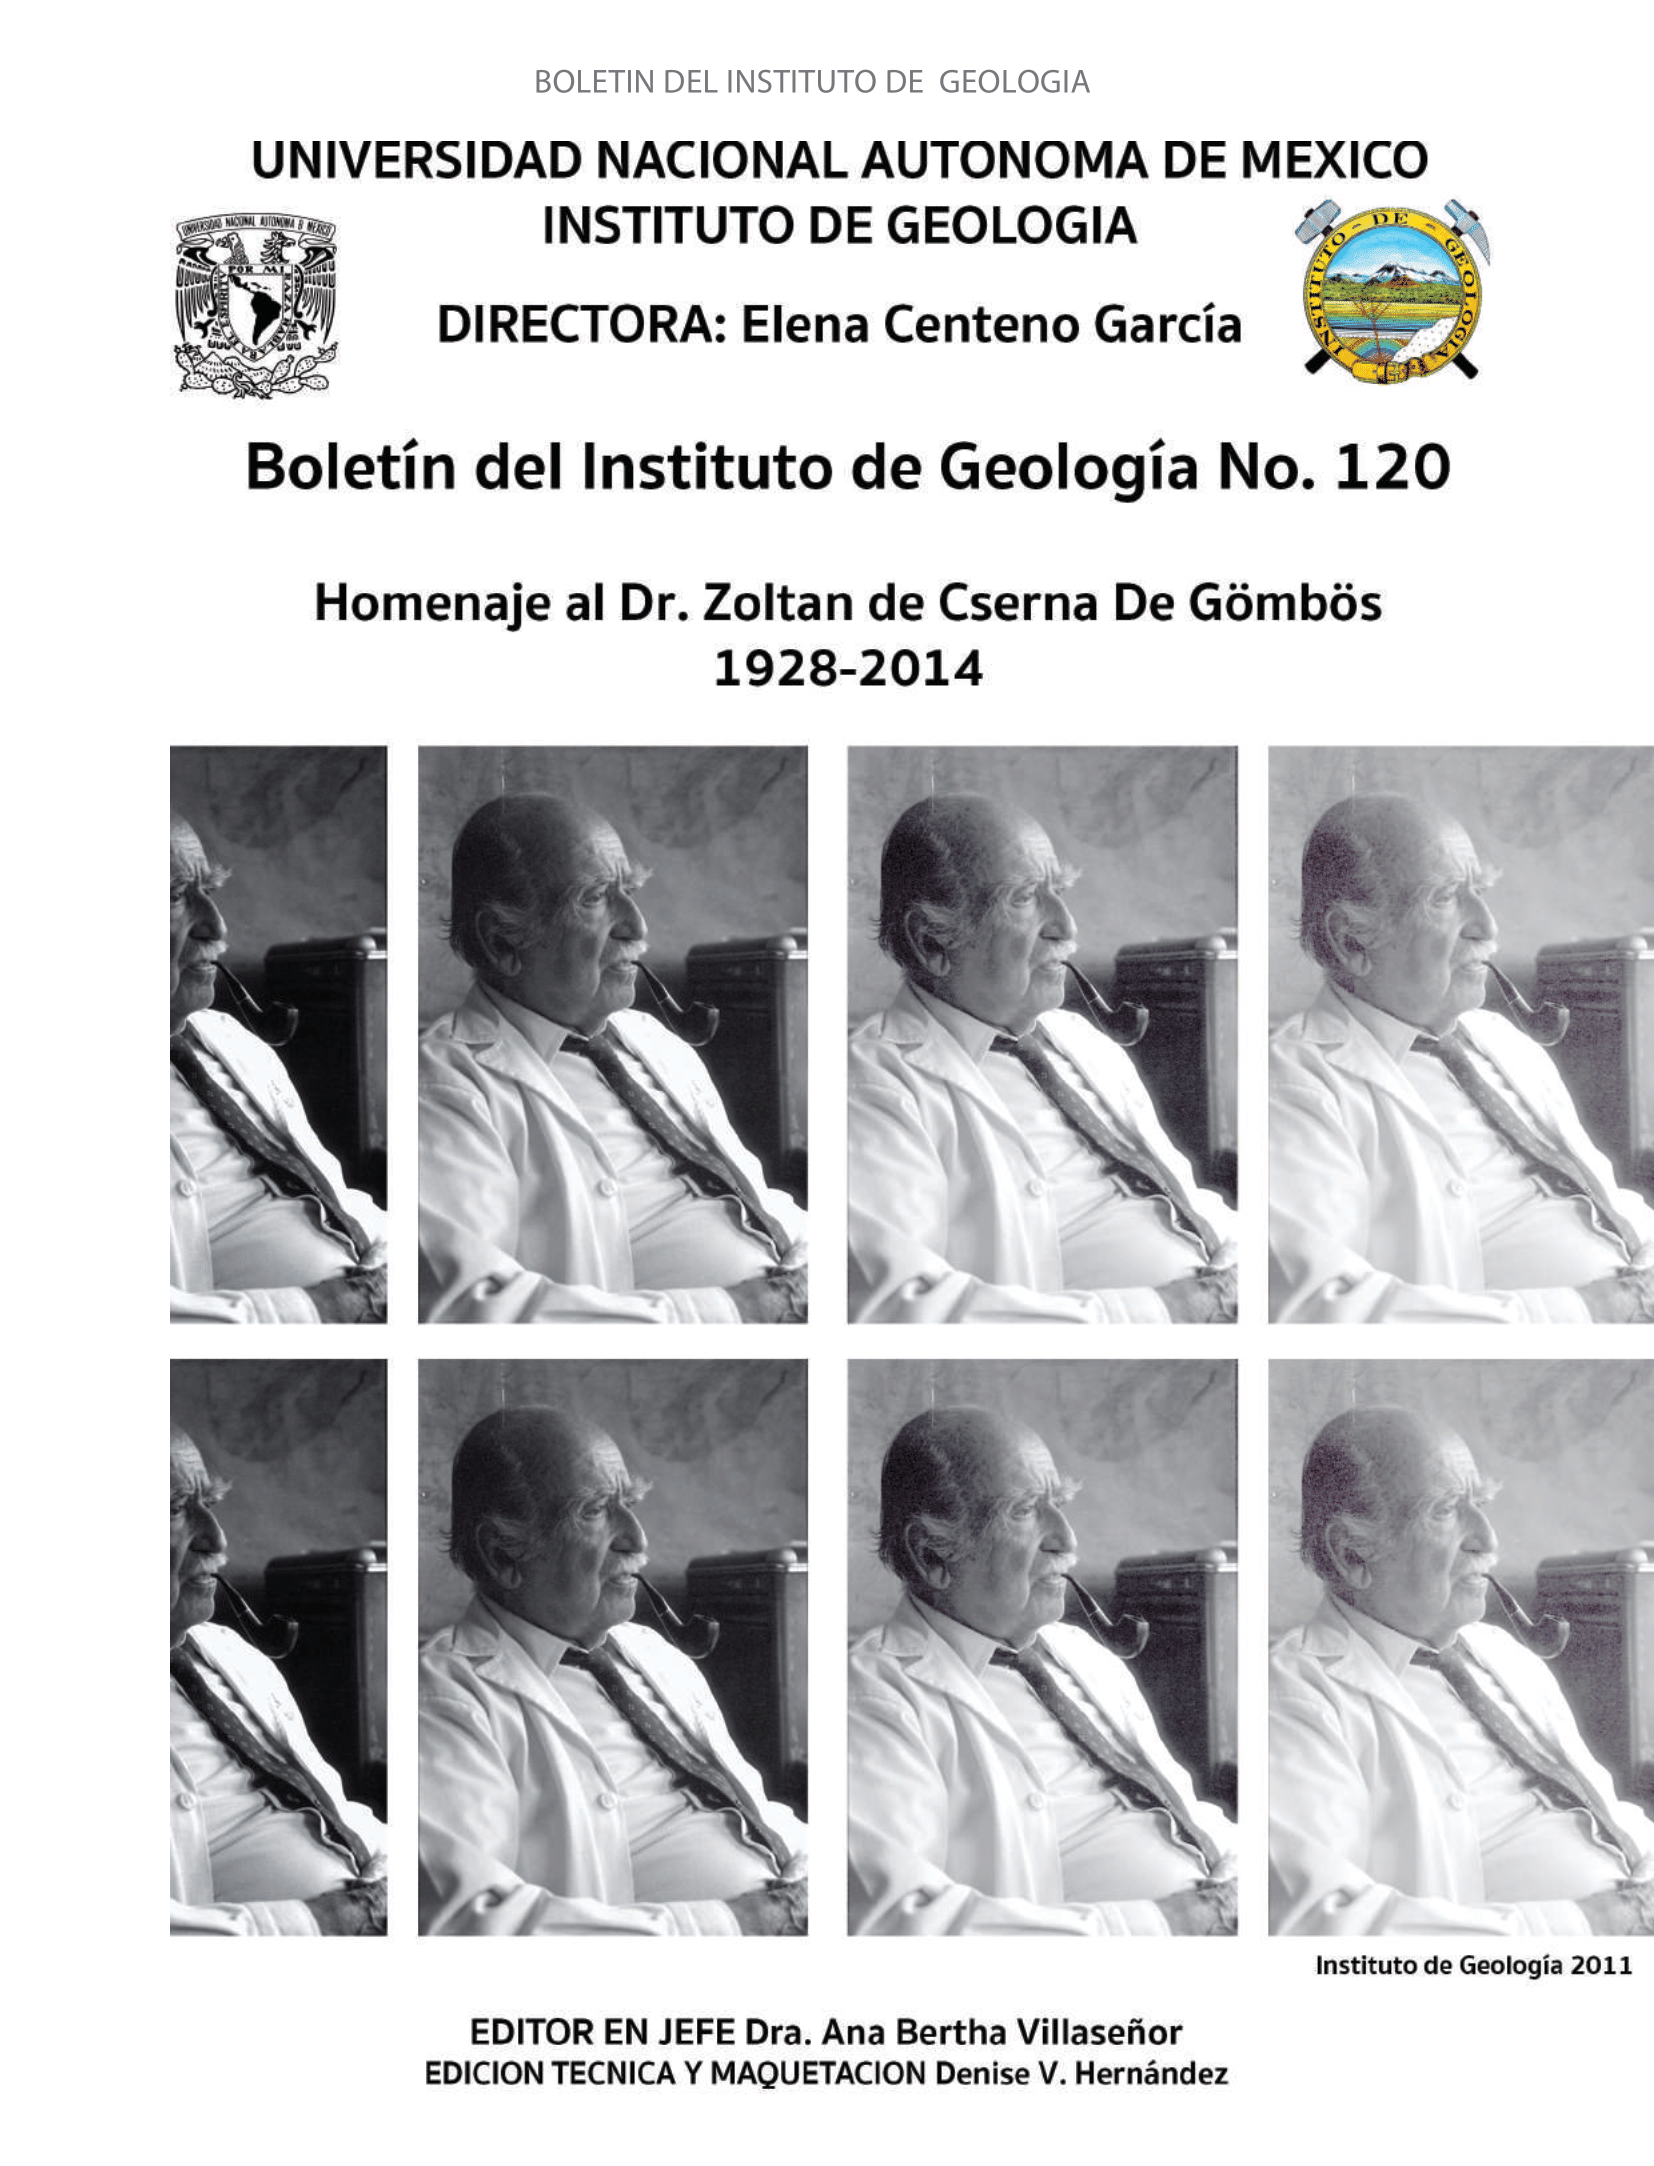 					Ver Núm. 120: Homenaje al Dr. Zoltan de Cserna De Gömbös 1928-2014
				